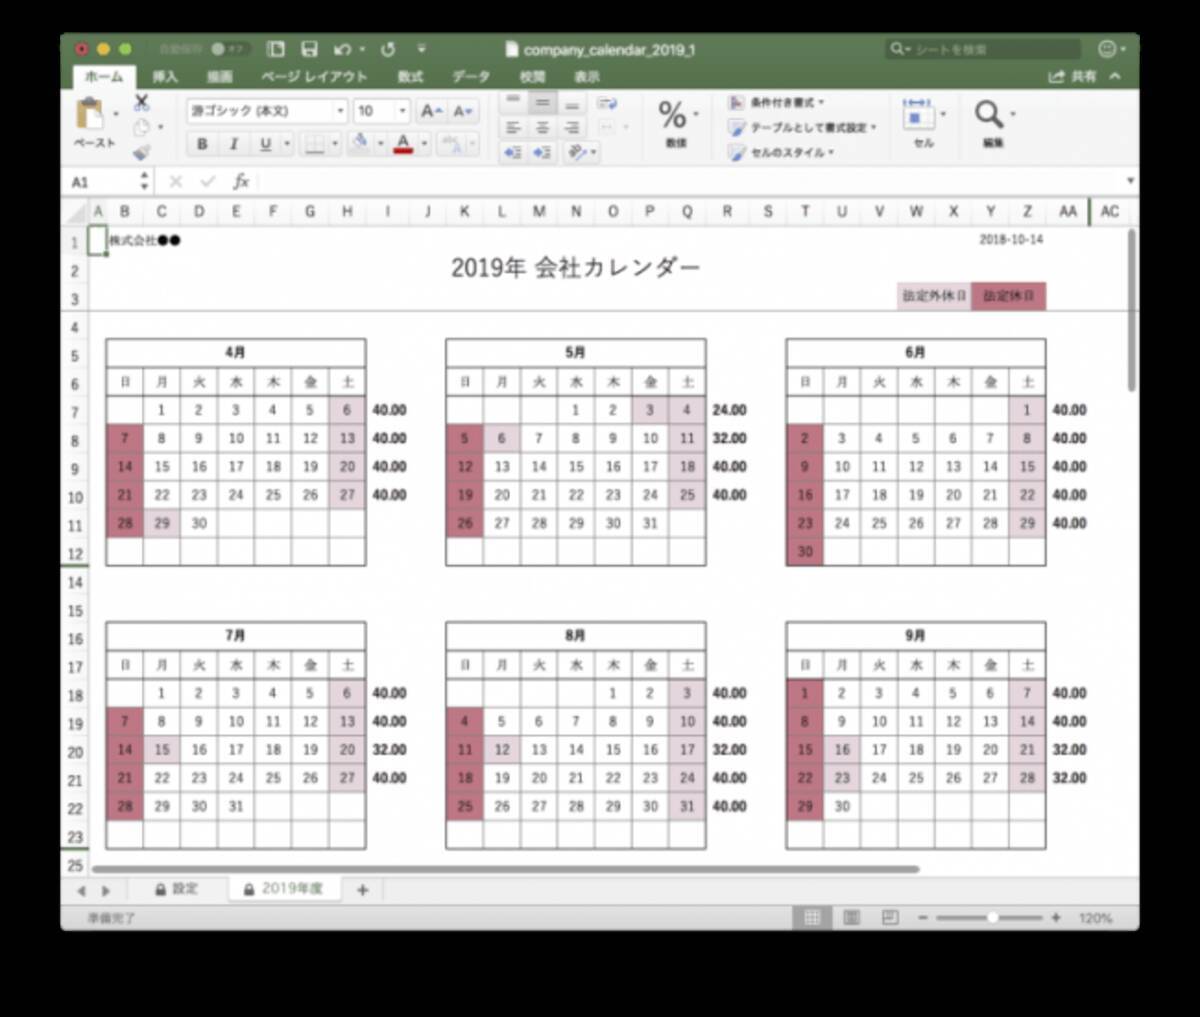 2019年版 会社年間カレンダー簡単作成 Excel版 変形労働時間制に対応 無料ダウンロード 2018年10月31日 エキサイトニュース